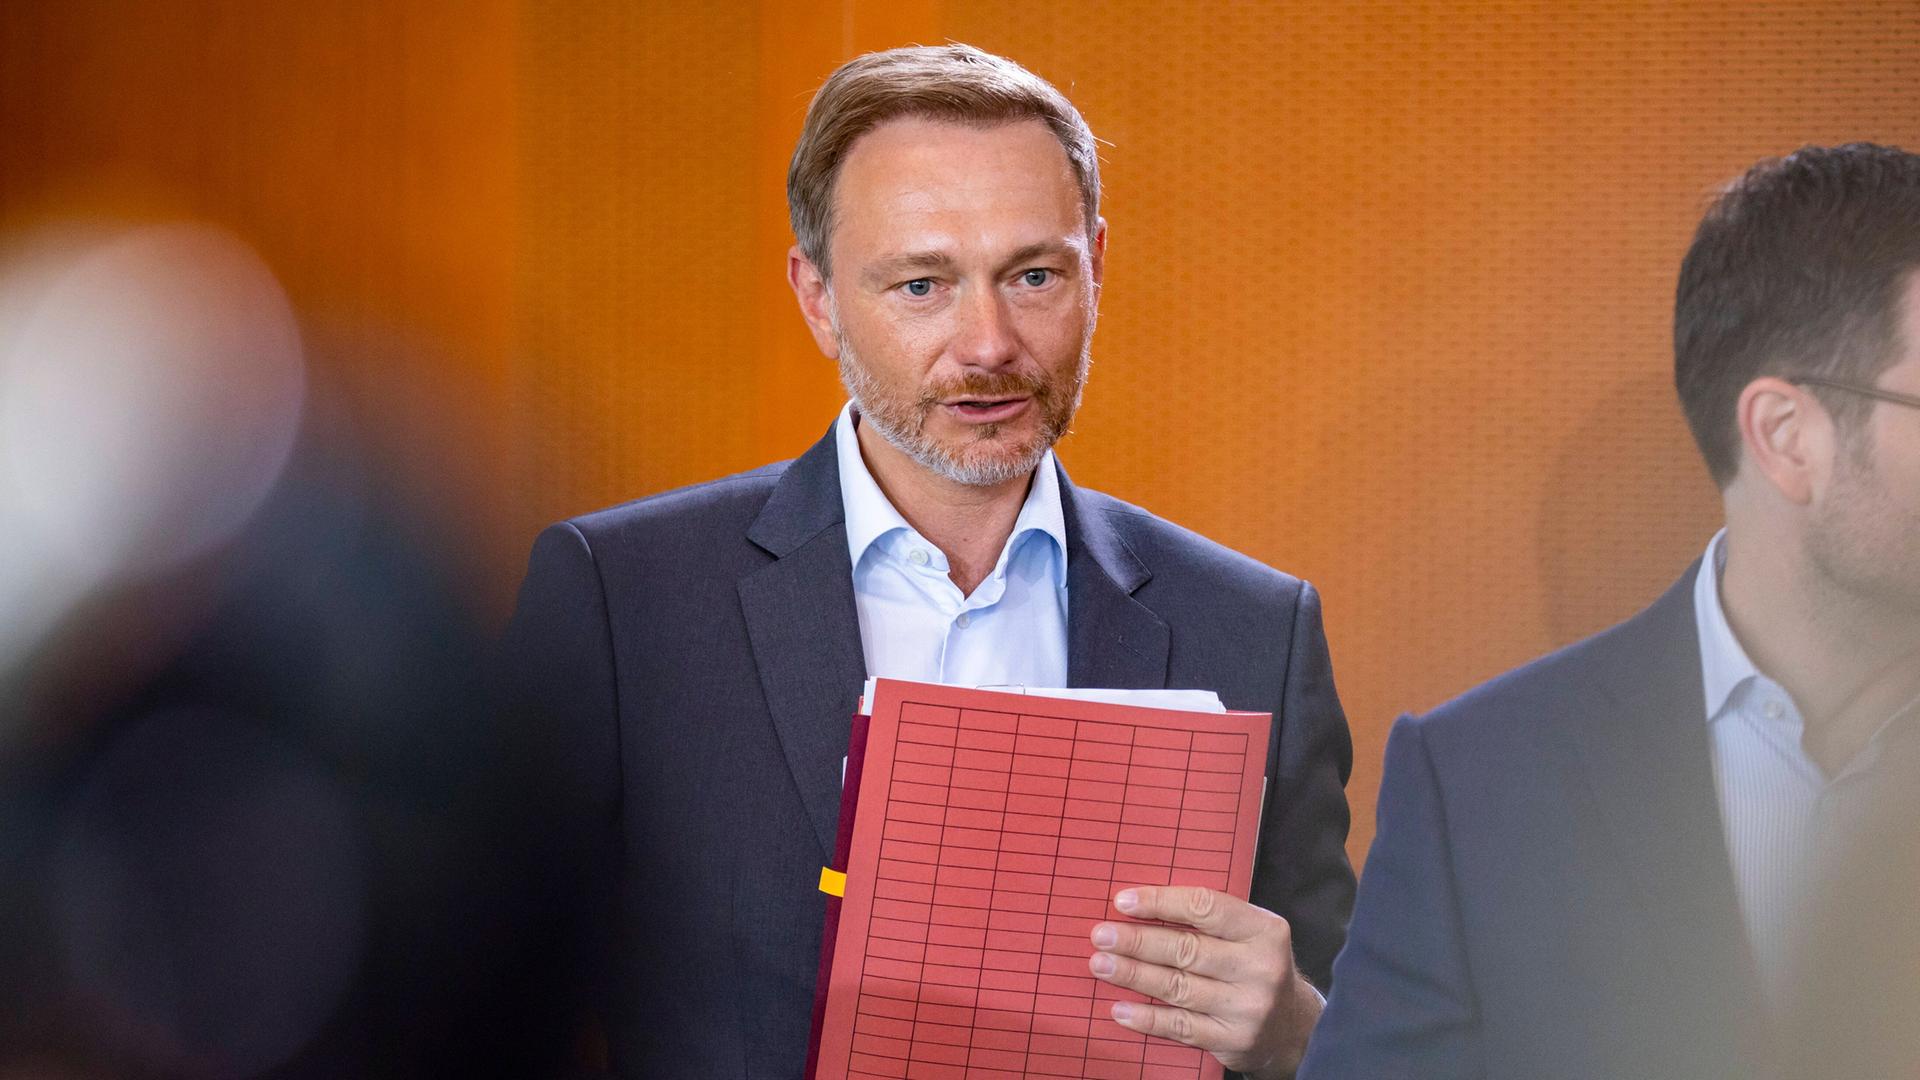 Haushalt - Finanzminister Lindner will Steuerzahler um 10,1 Milliarden Euro entlasten